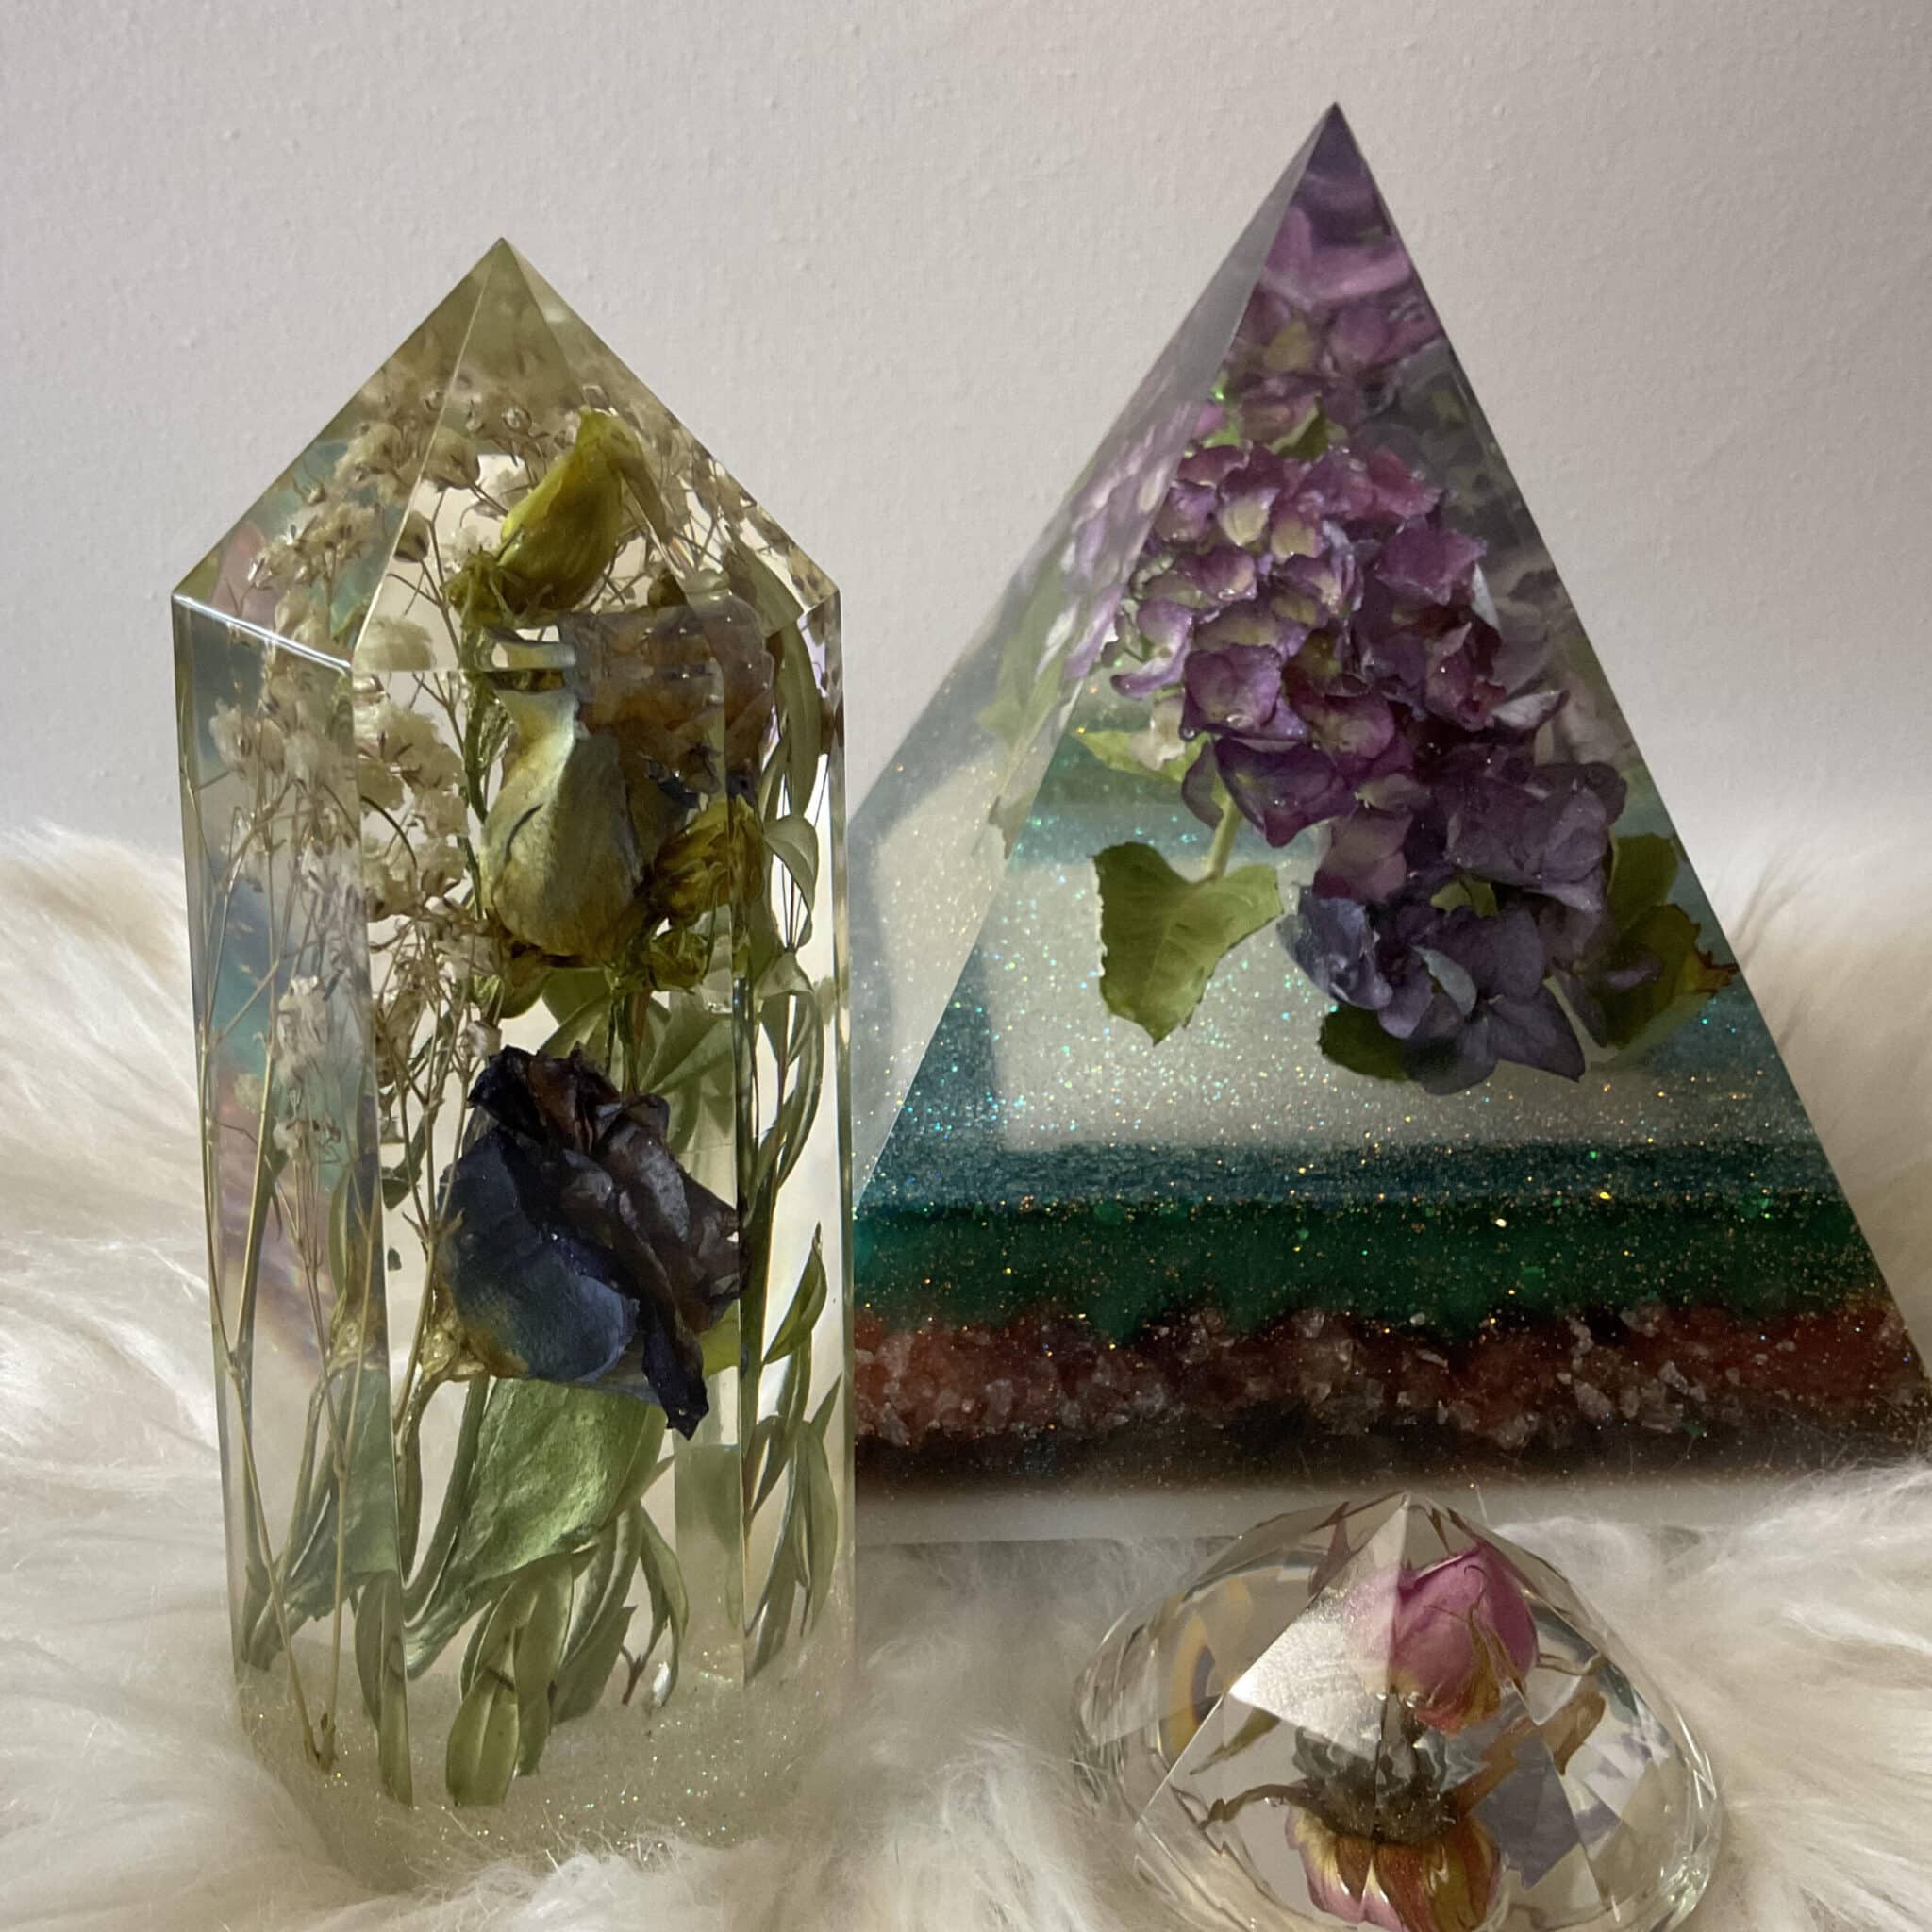 Usa resina per inclusione e fiori secchi per creare un pettine - Perles & Co